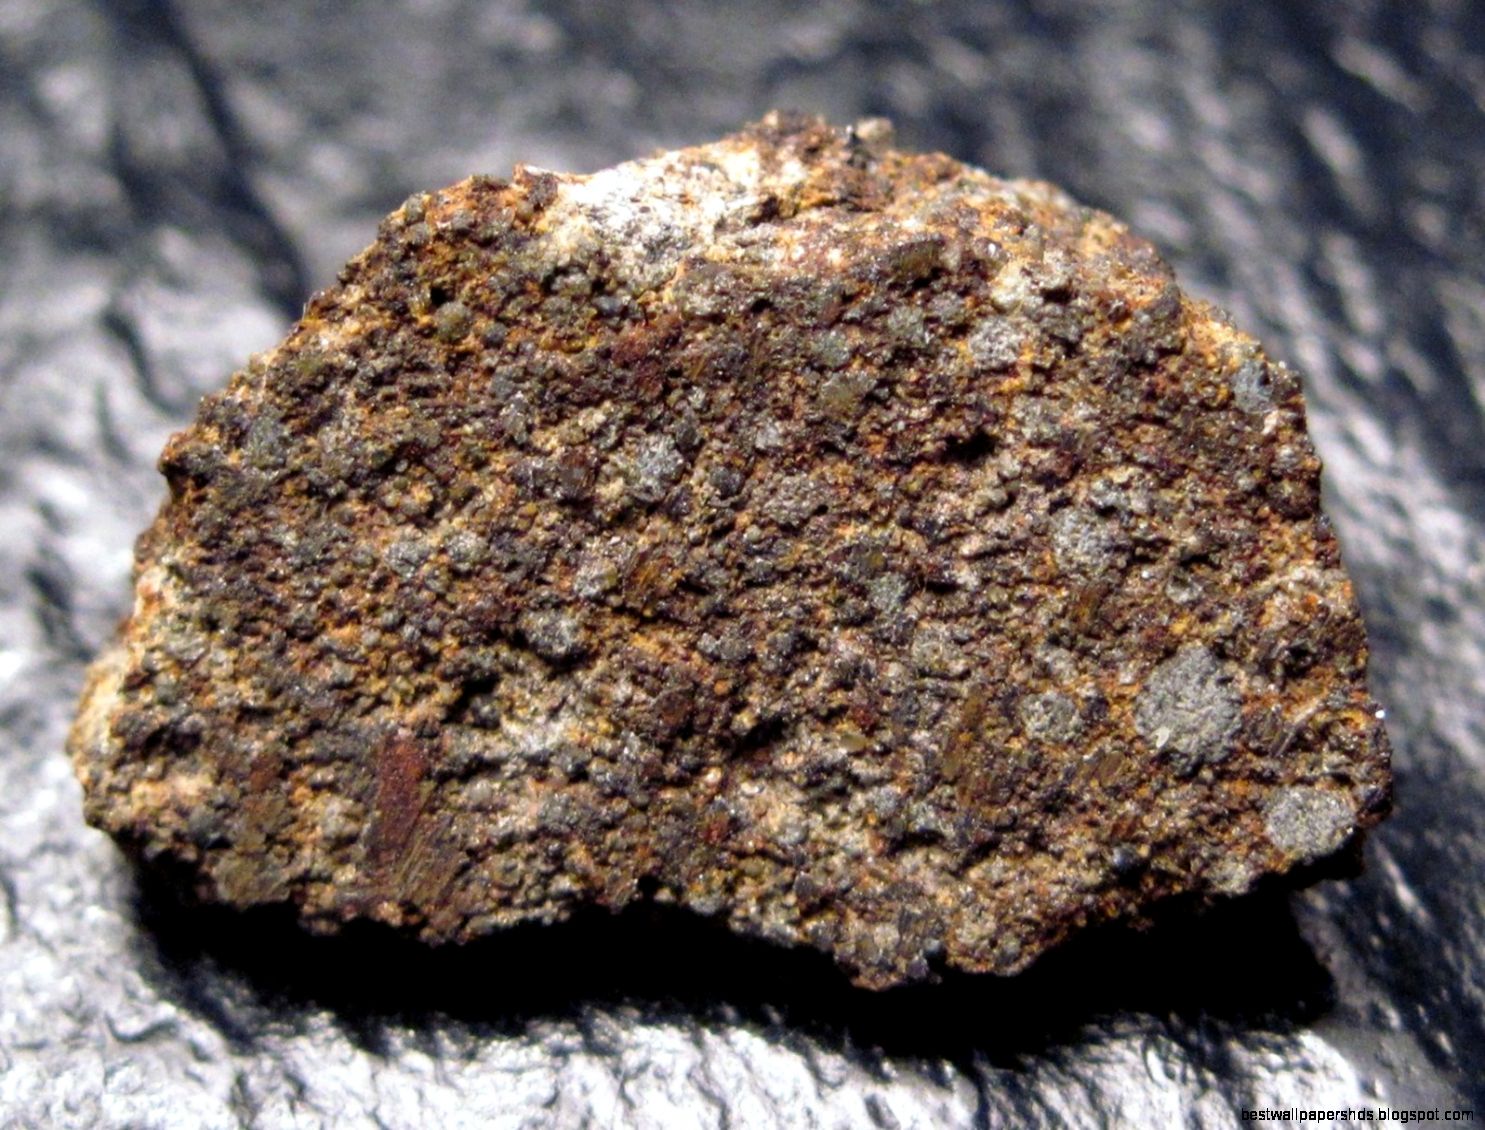 meteorite rock types